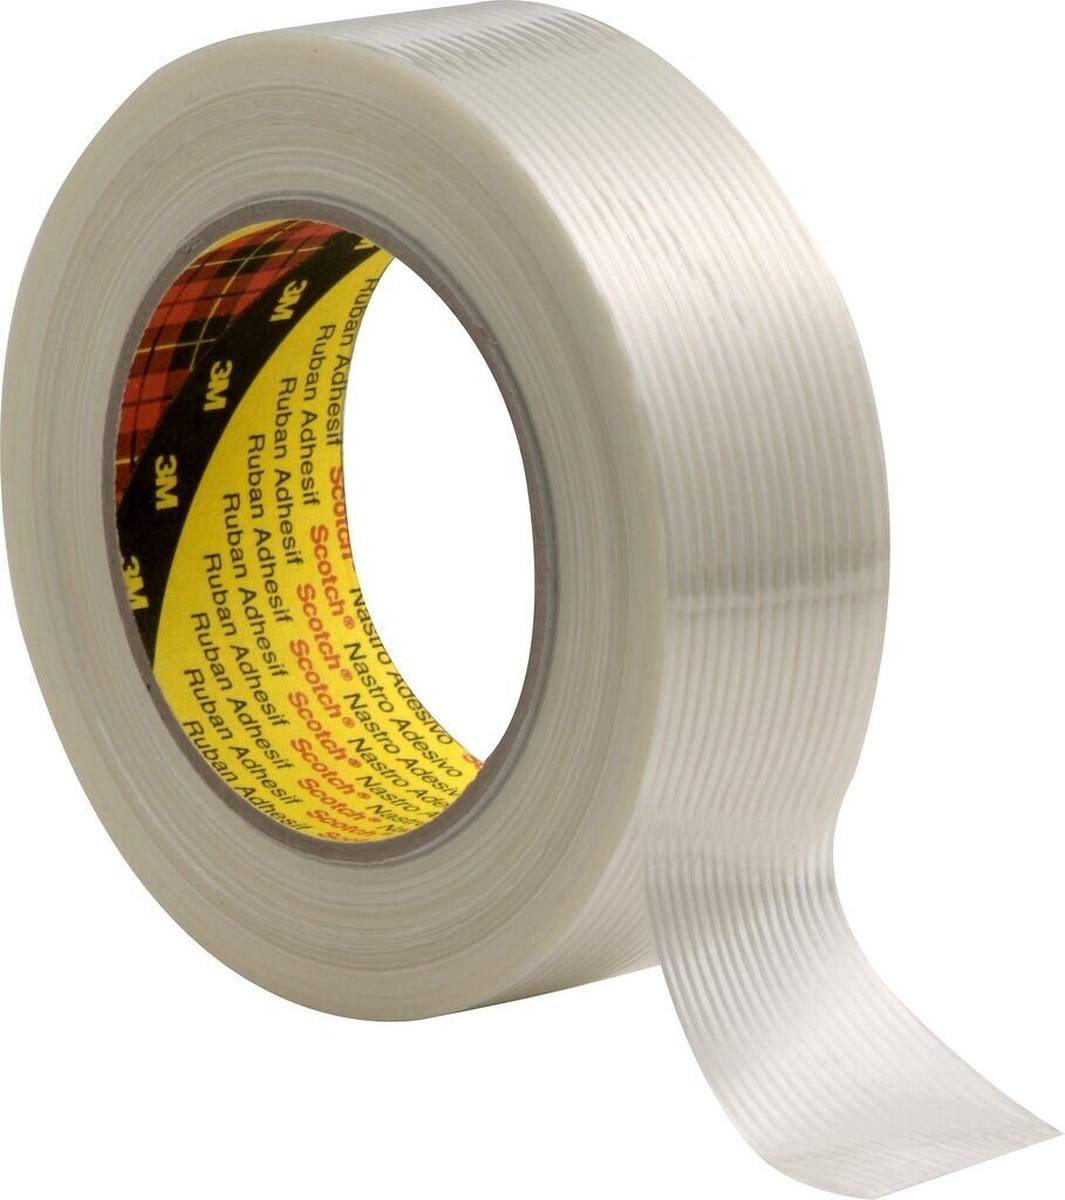 3M Scotch nastro adesivo in filamenti 8956, trasparente, 19 mm x 50 m, 0,131 mm